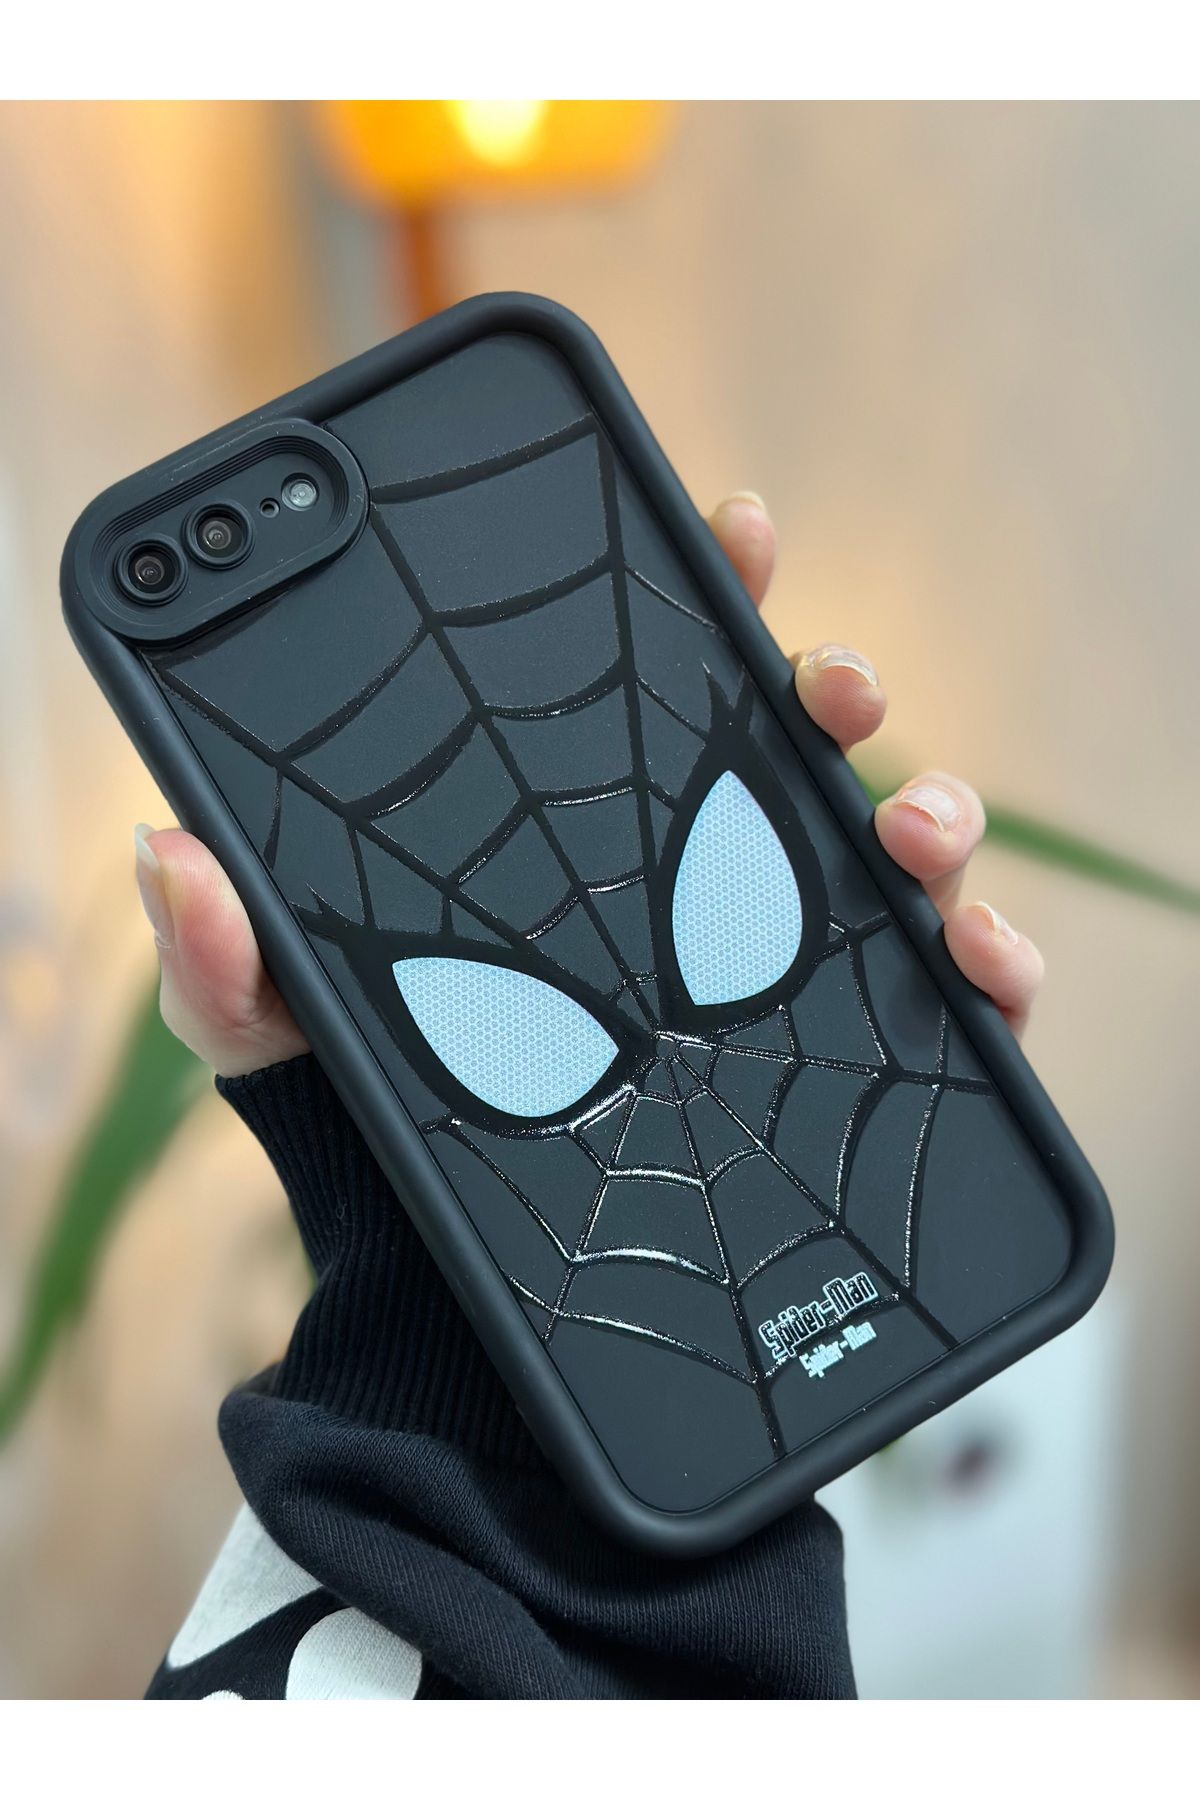 Go Aksesuar Iphone 7 Plus Ve 8 Plus Uyumlu Spiderman Baskılı Lansman Silikon Kılıf